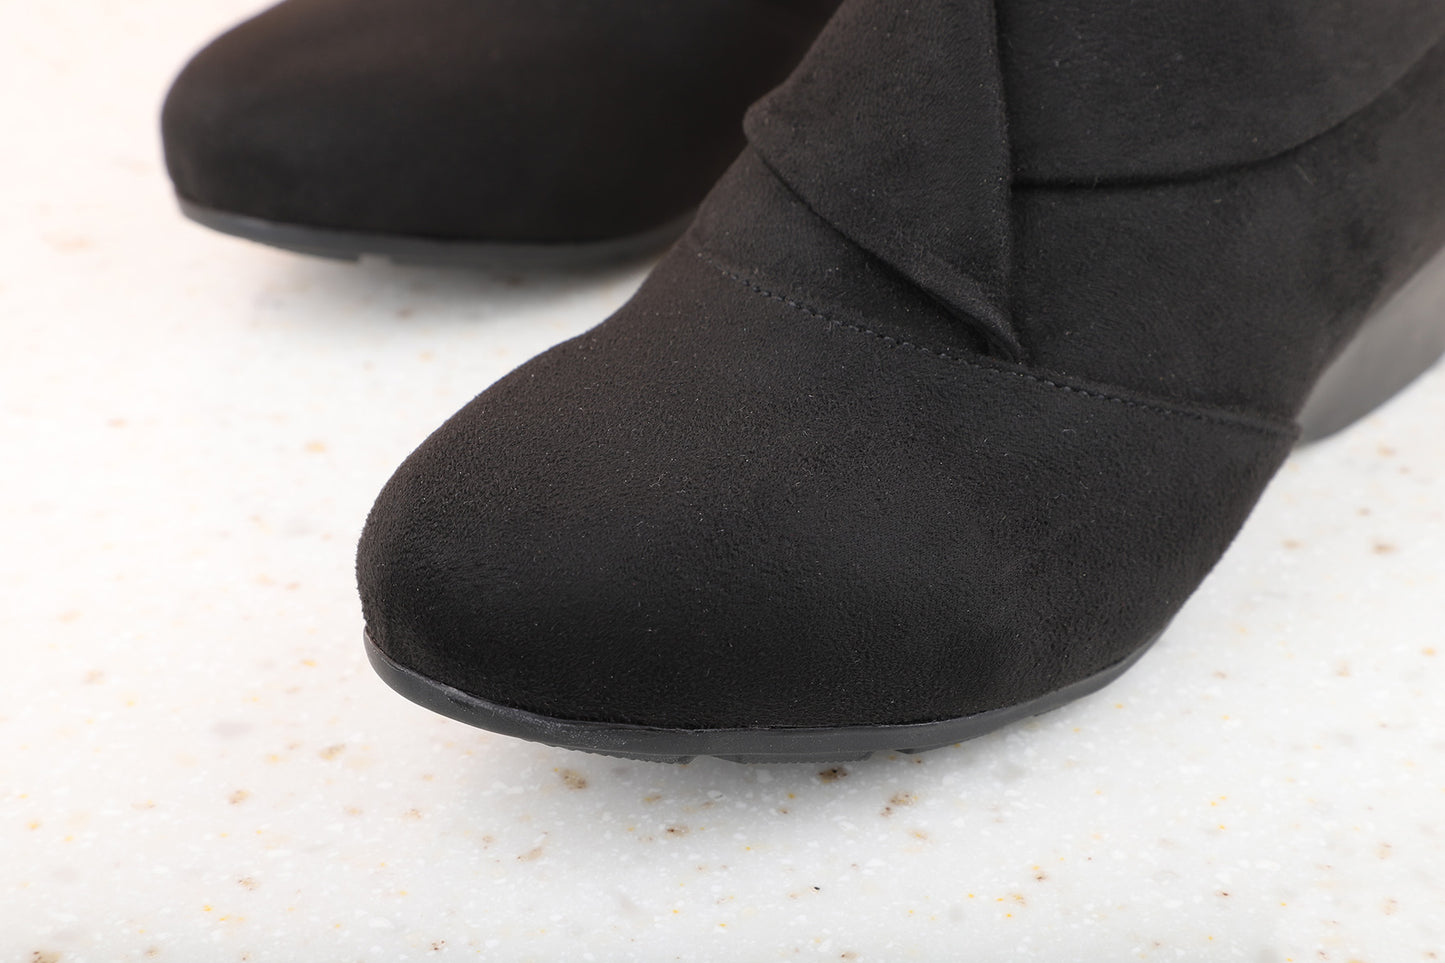 Women Black Wedge Heel Regular Boots